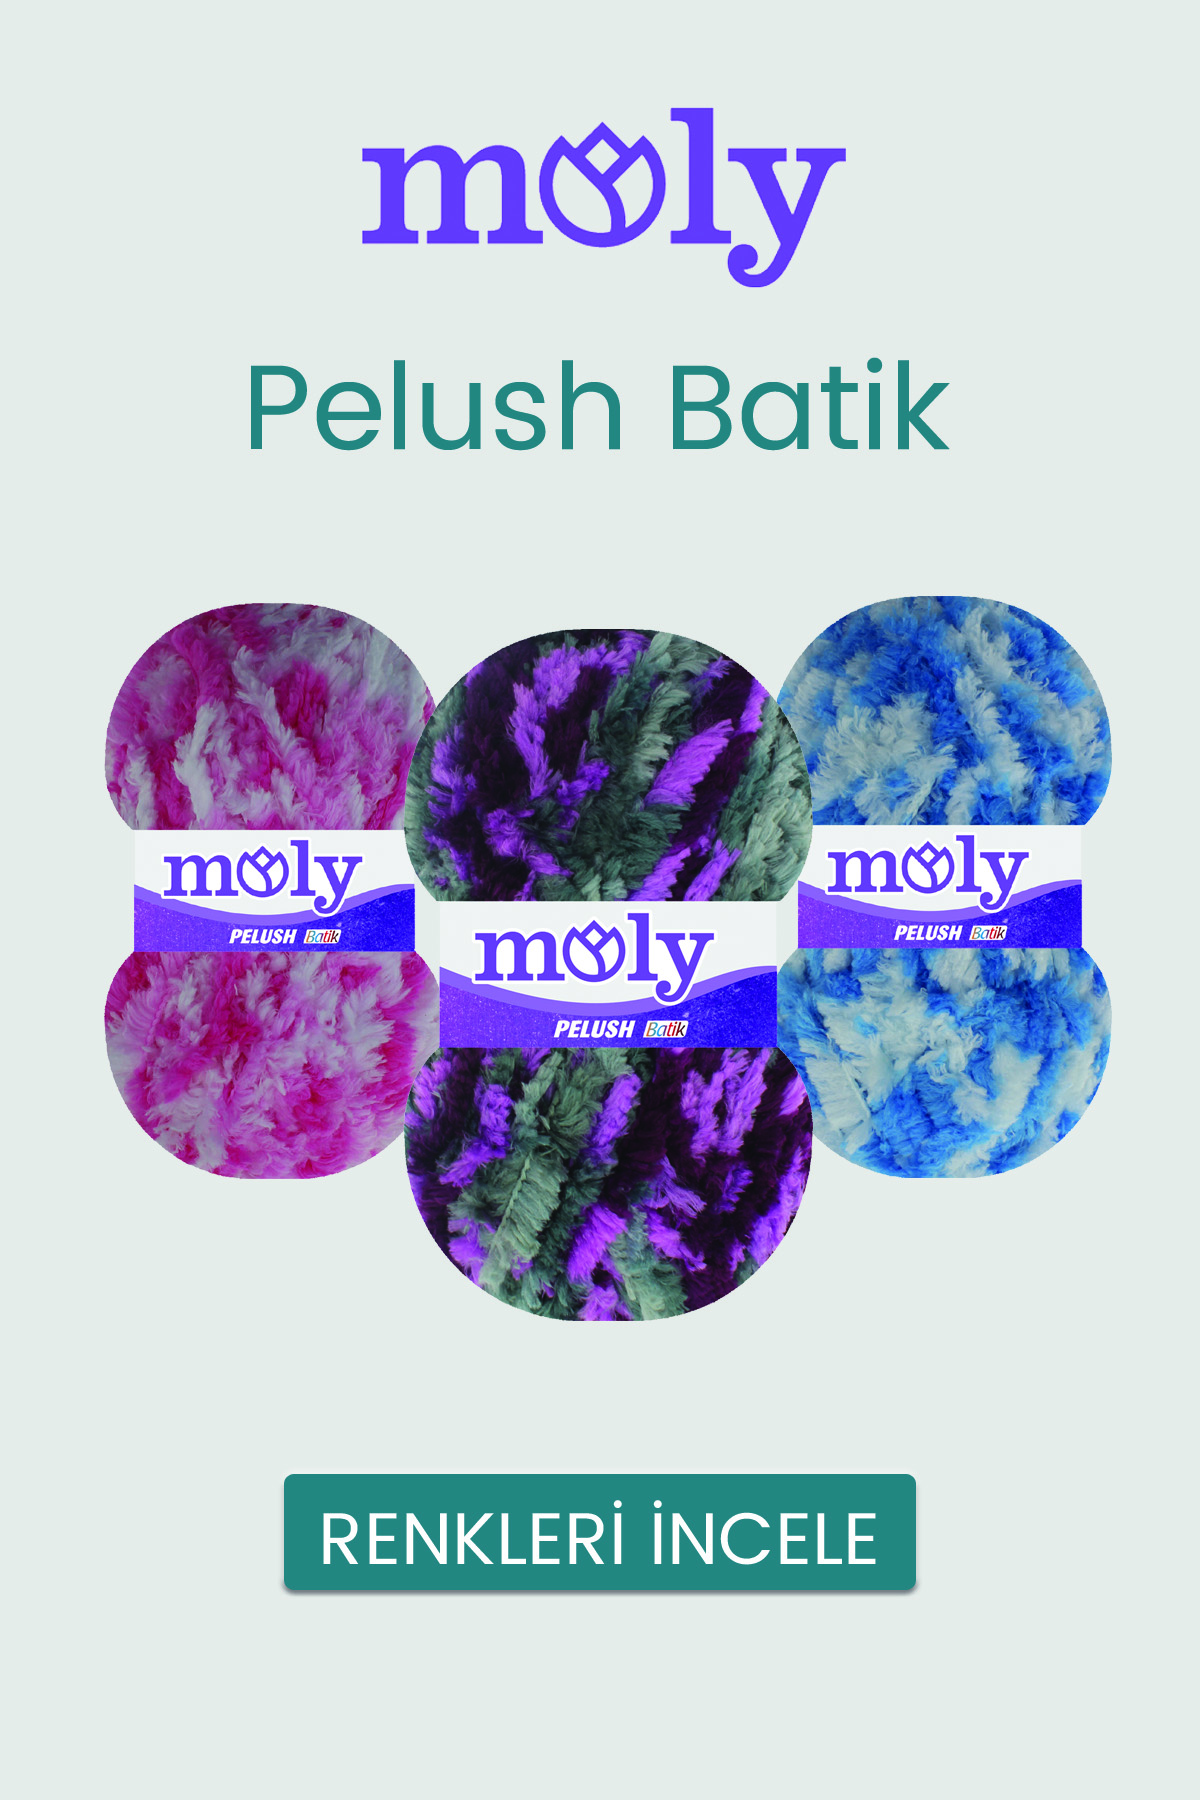 moly-pelush-batik-tekstilland